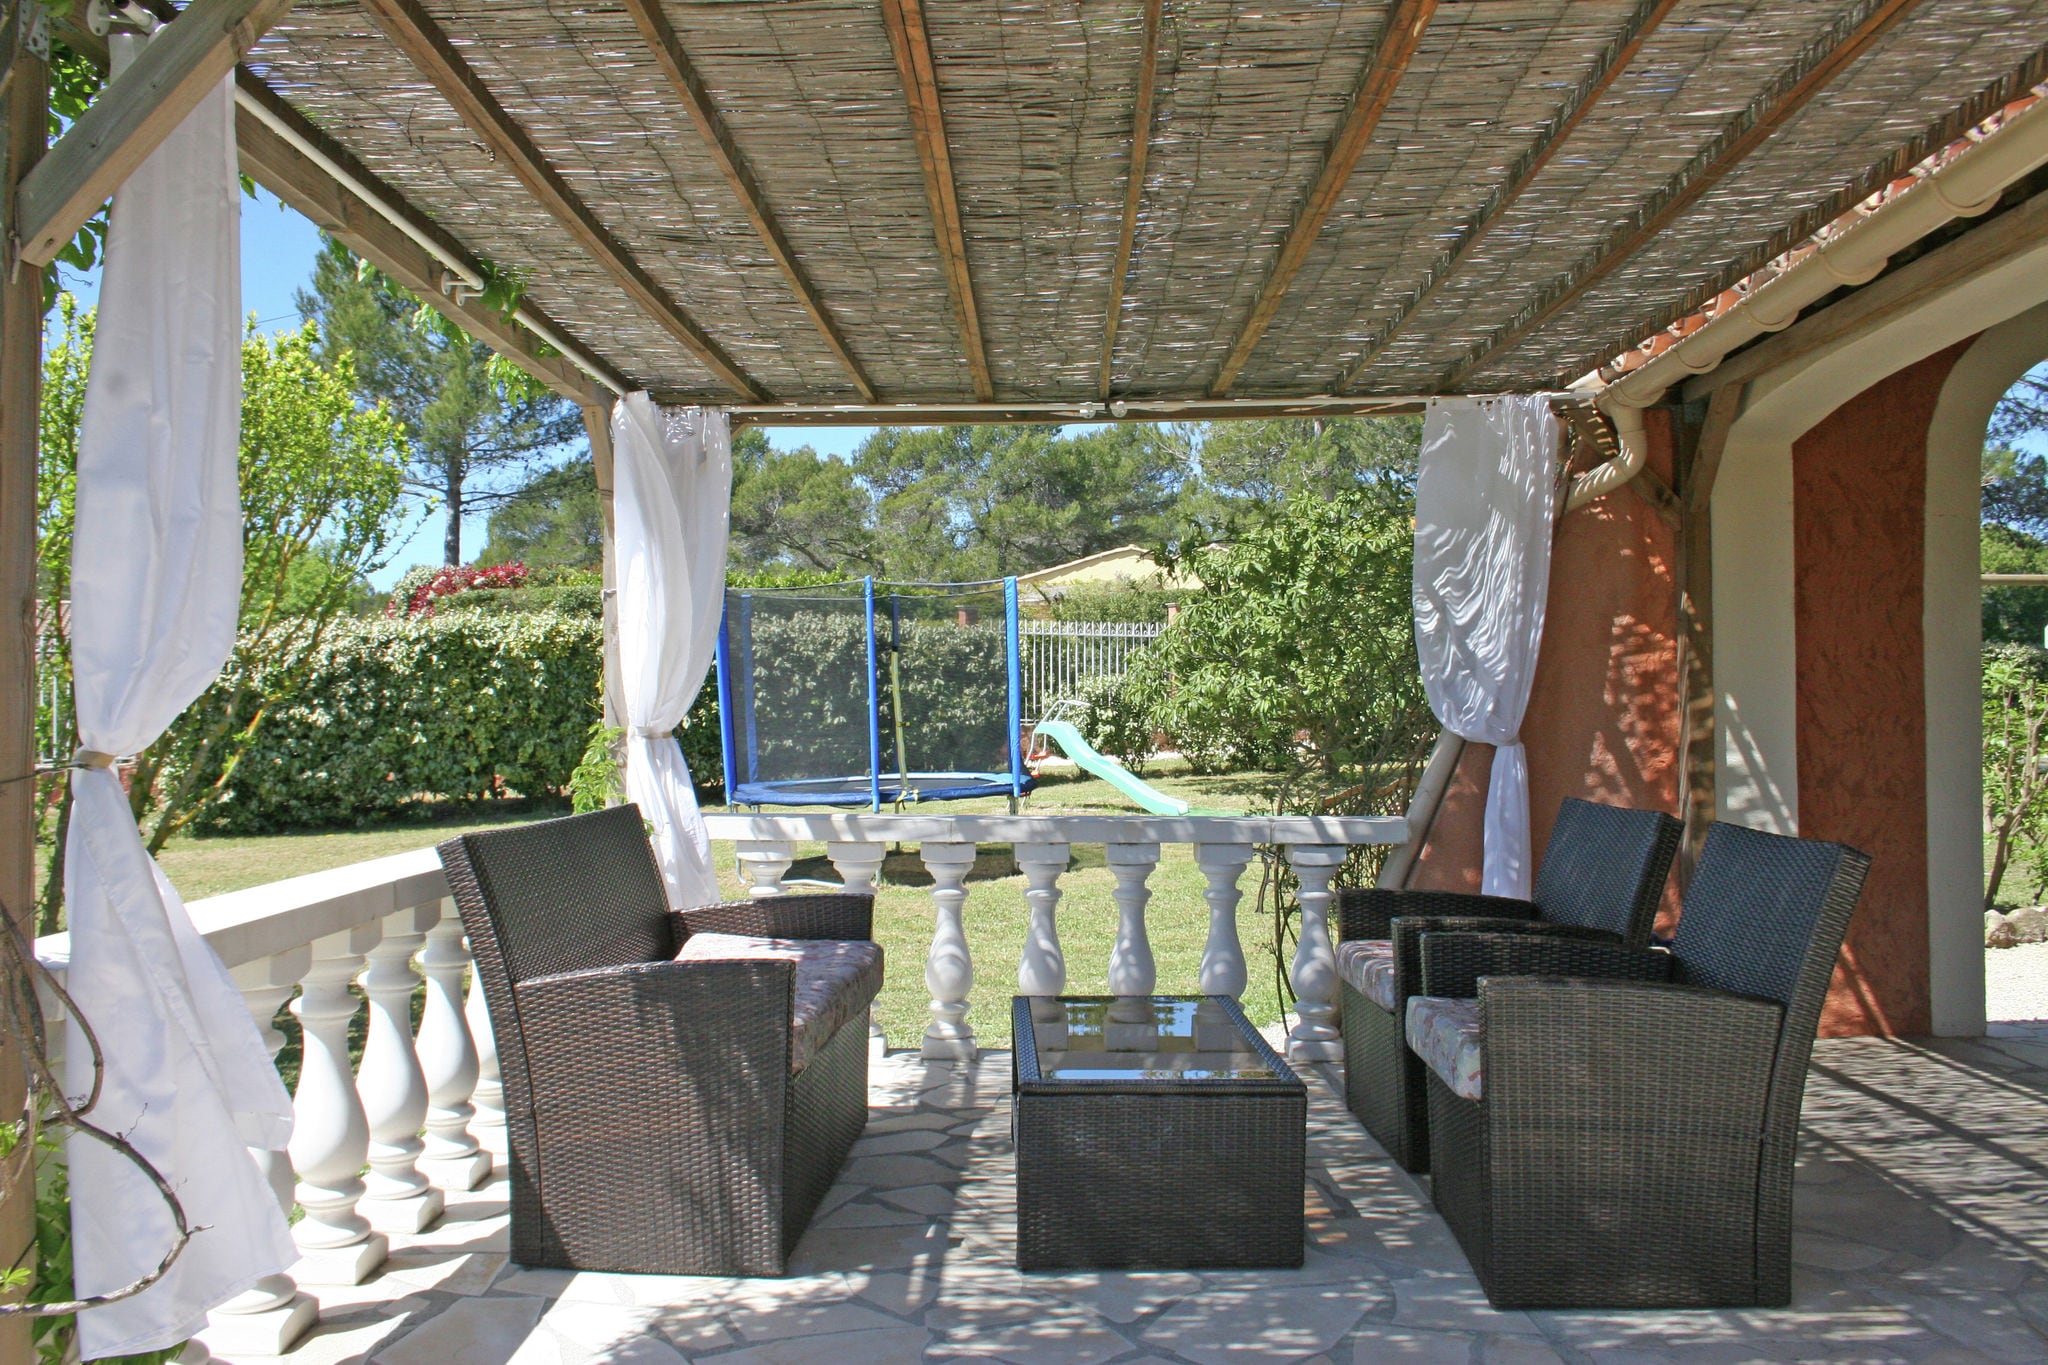 Grote villa met privézwembad en grote tuin in bosrijke natuur, stranden van Frejus op 15km